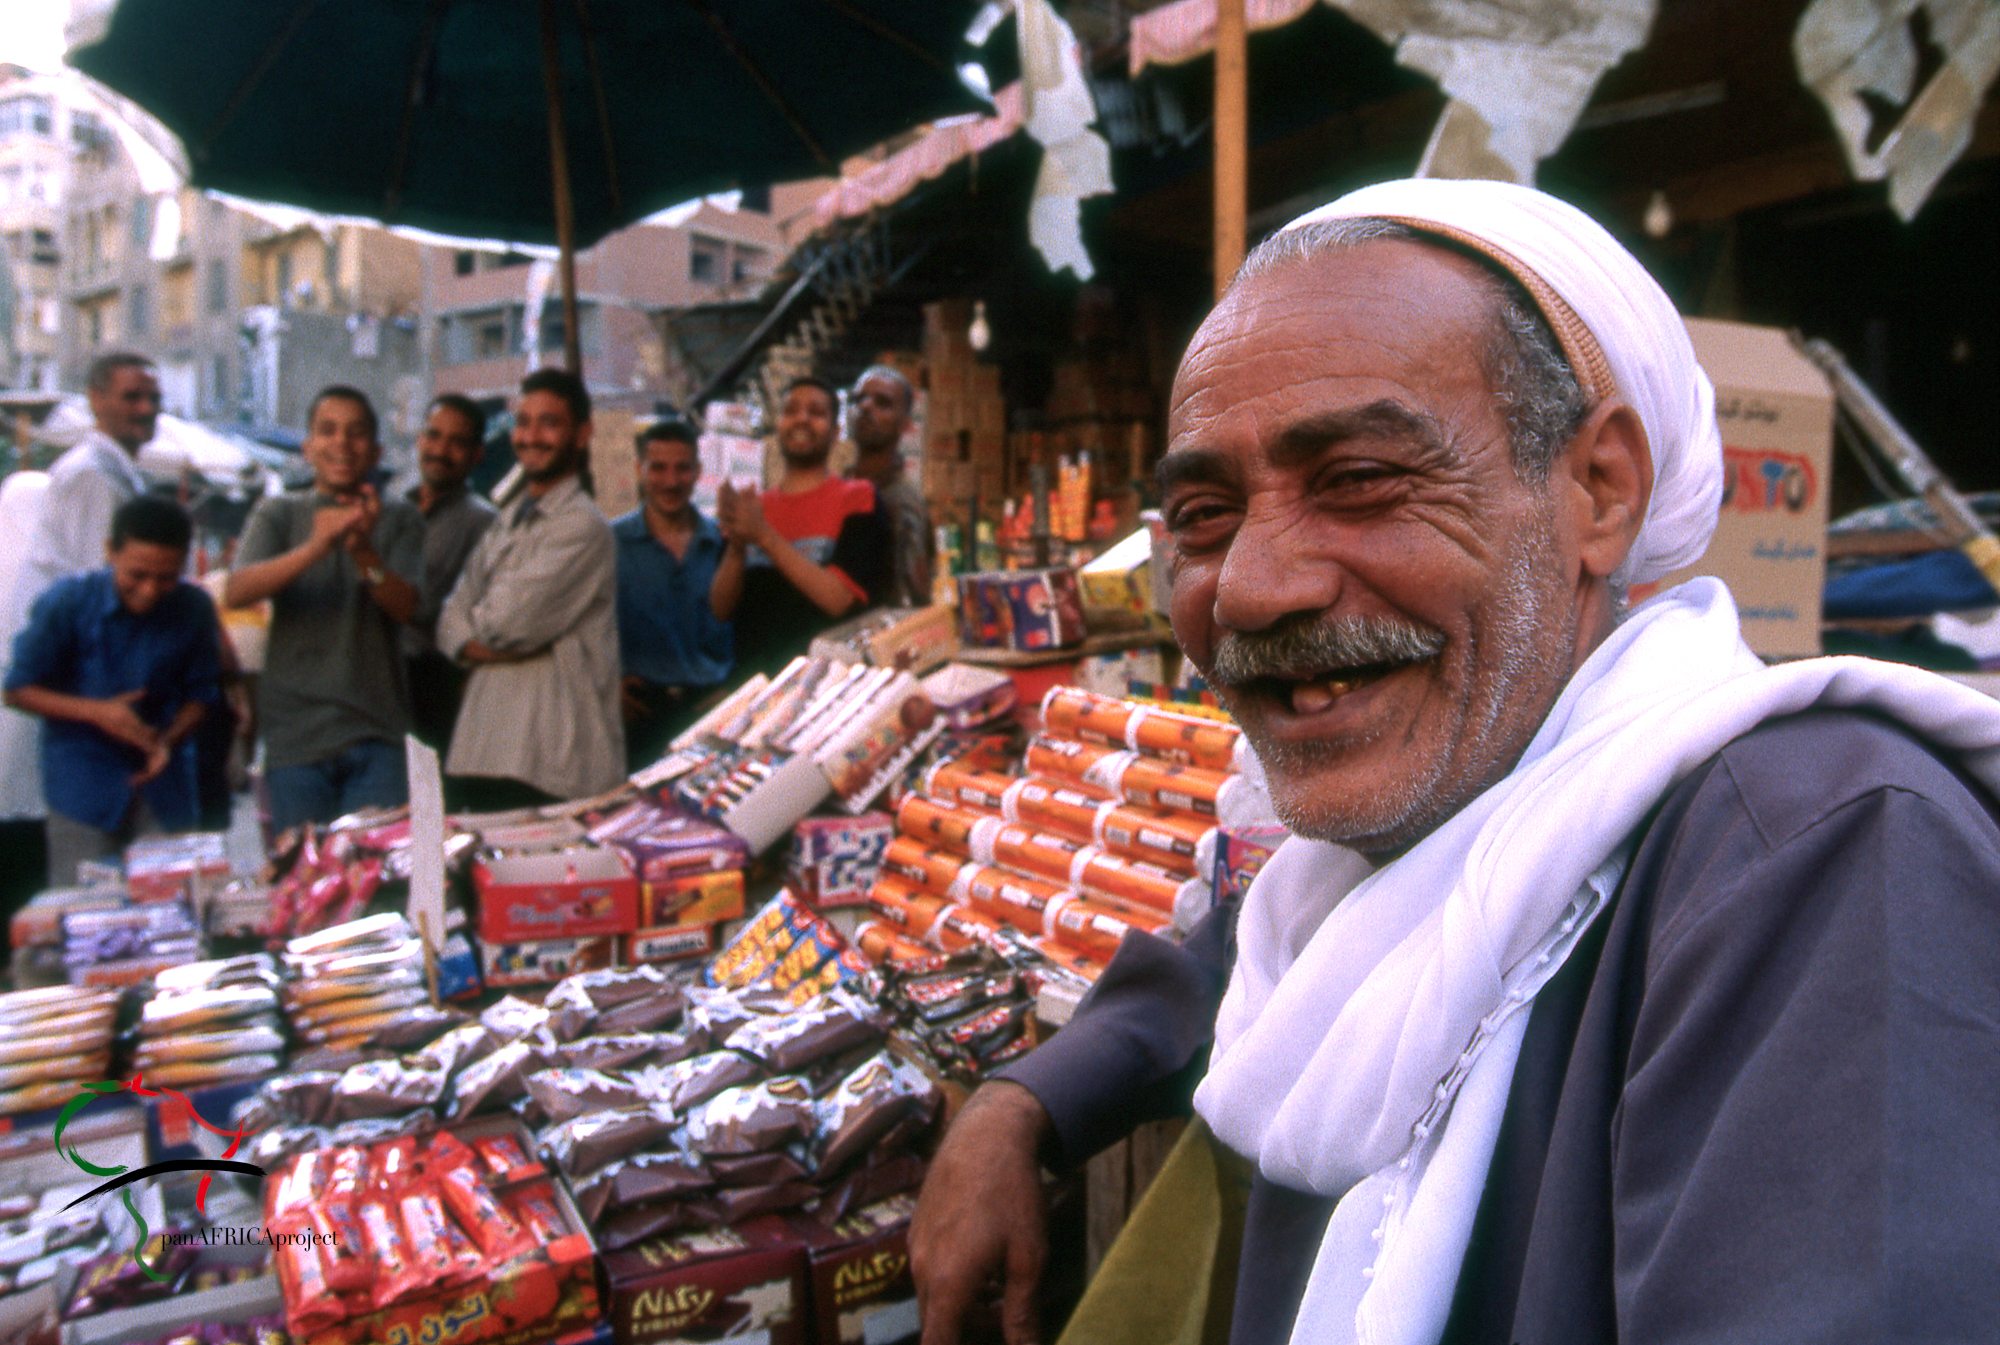 Vendors at a market in Alexandria, Egypt